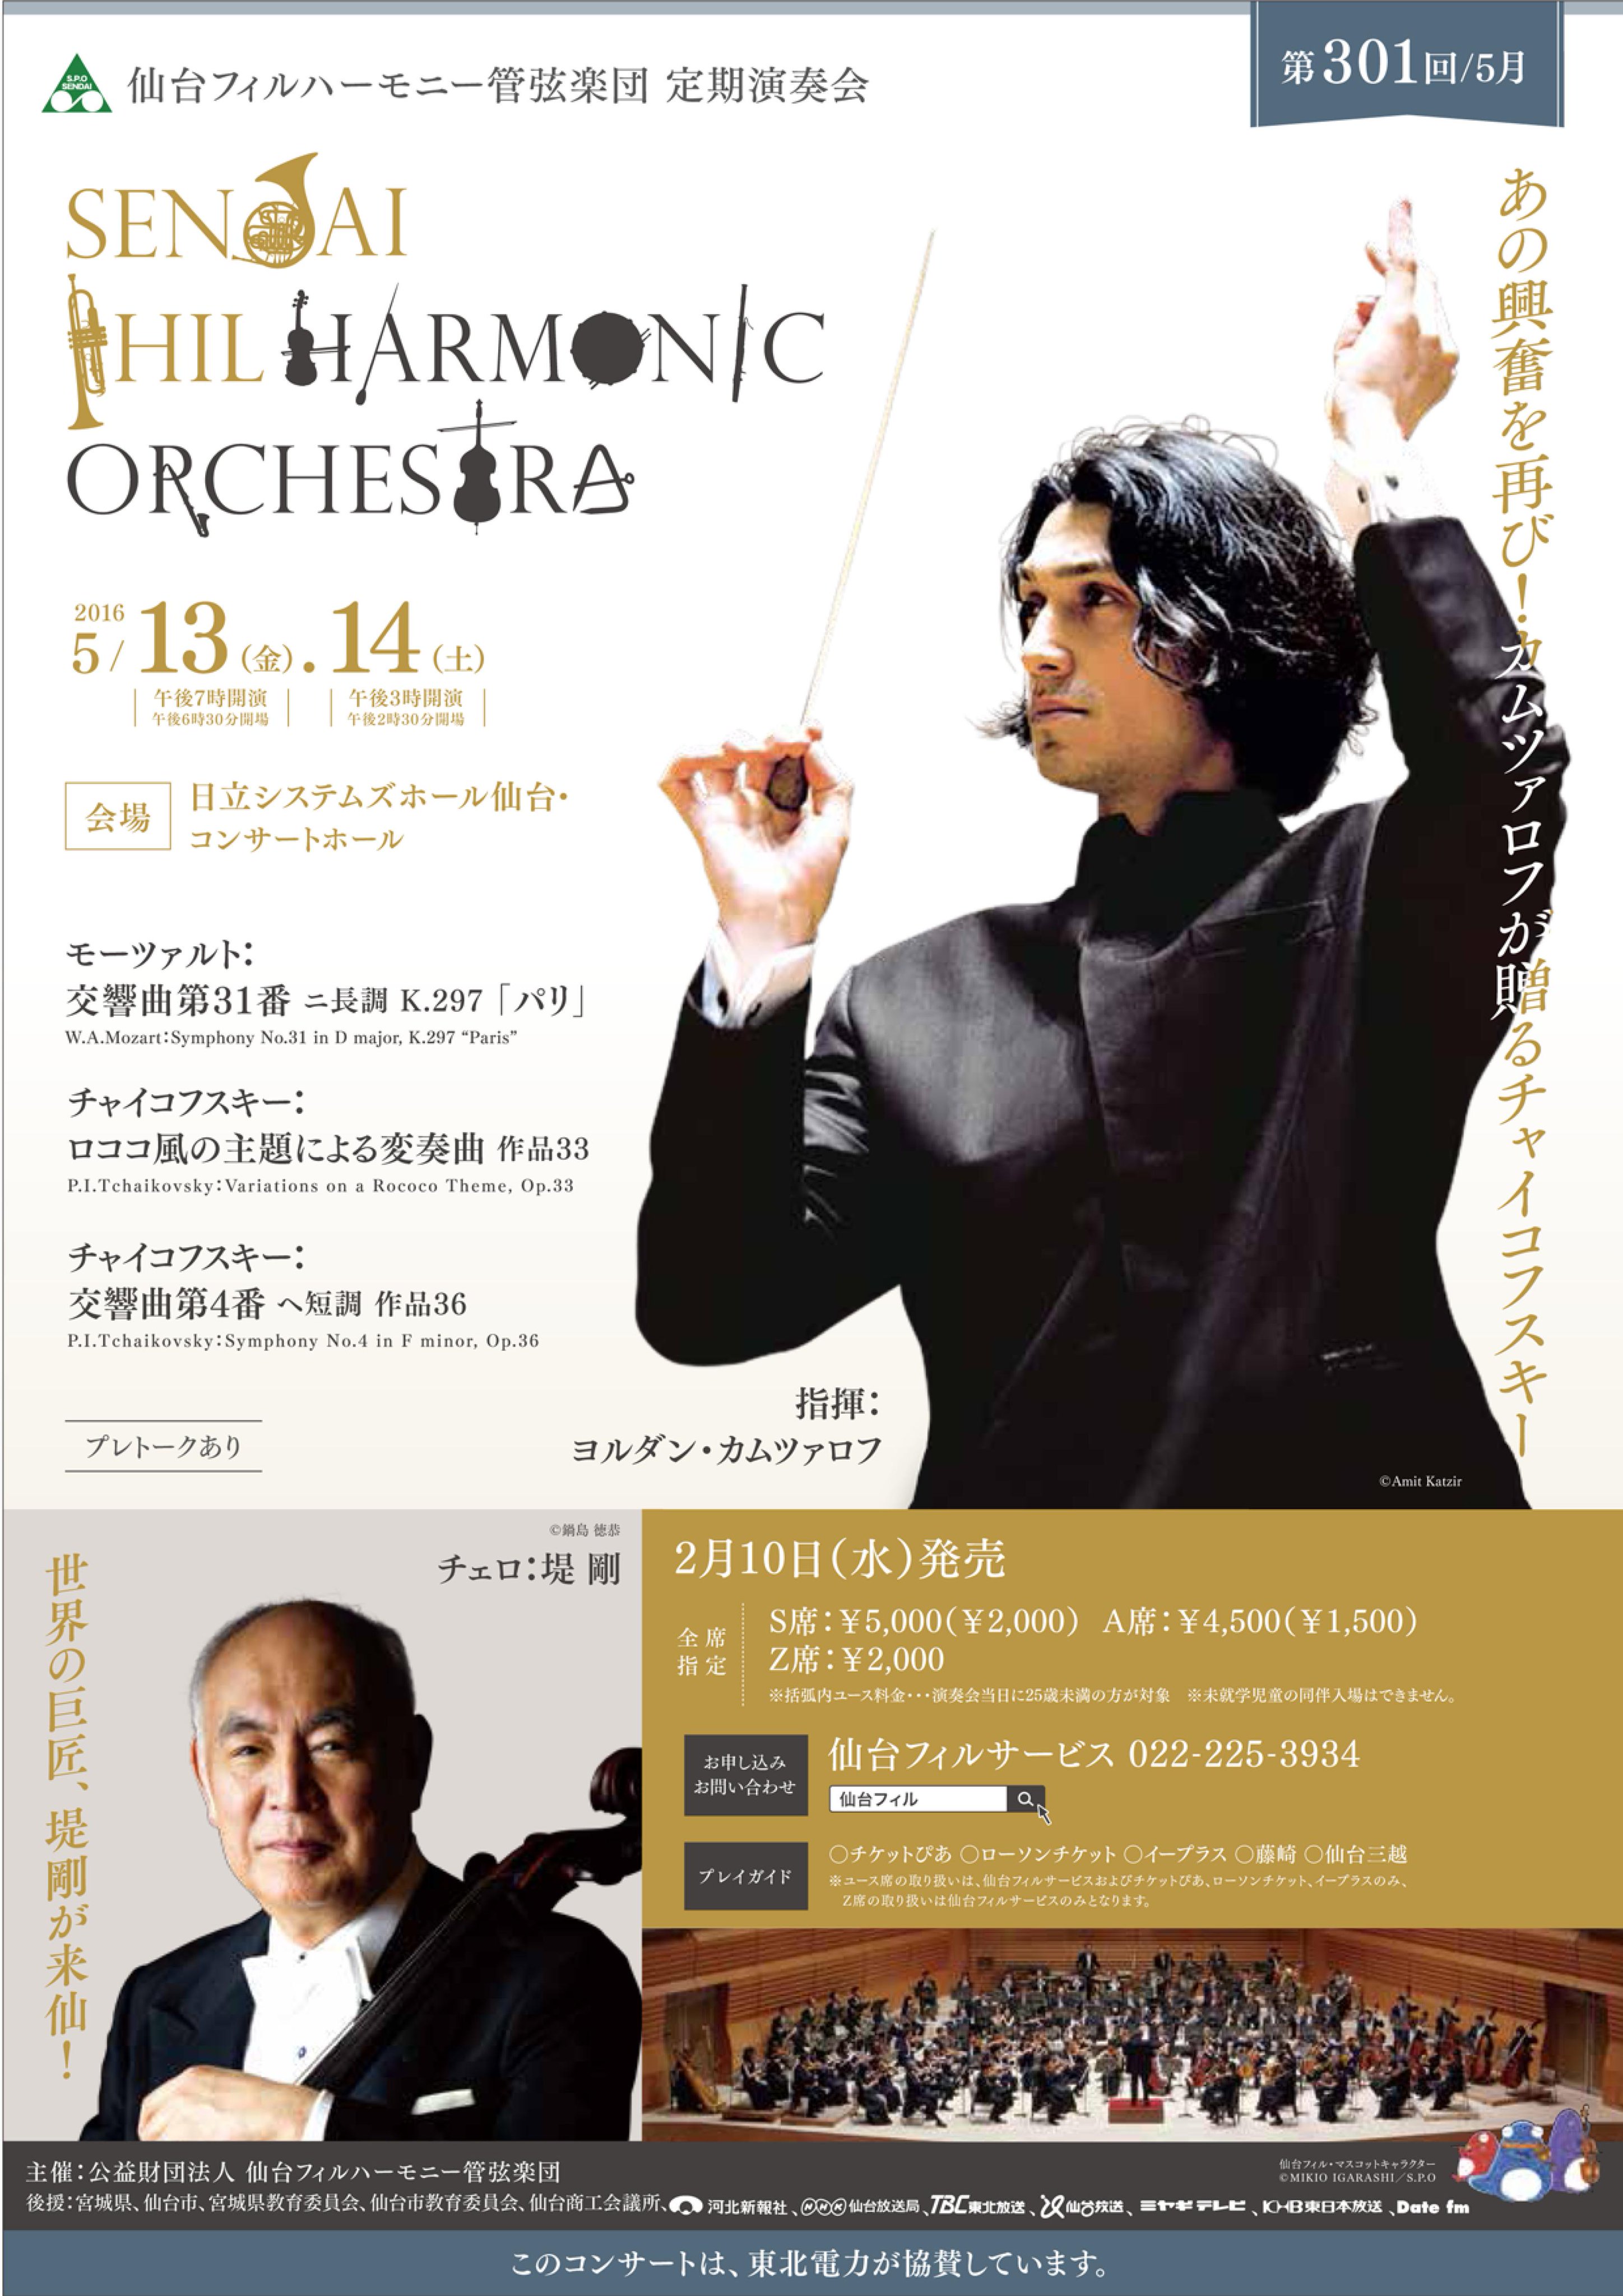 仙台フィルハーモニー管弦楽団【公式】Sendai Philharmonic Orchestra